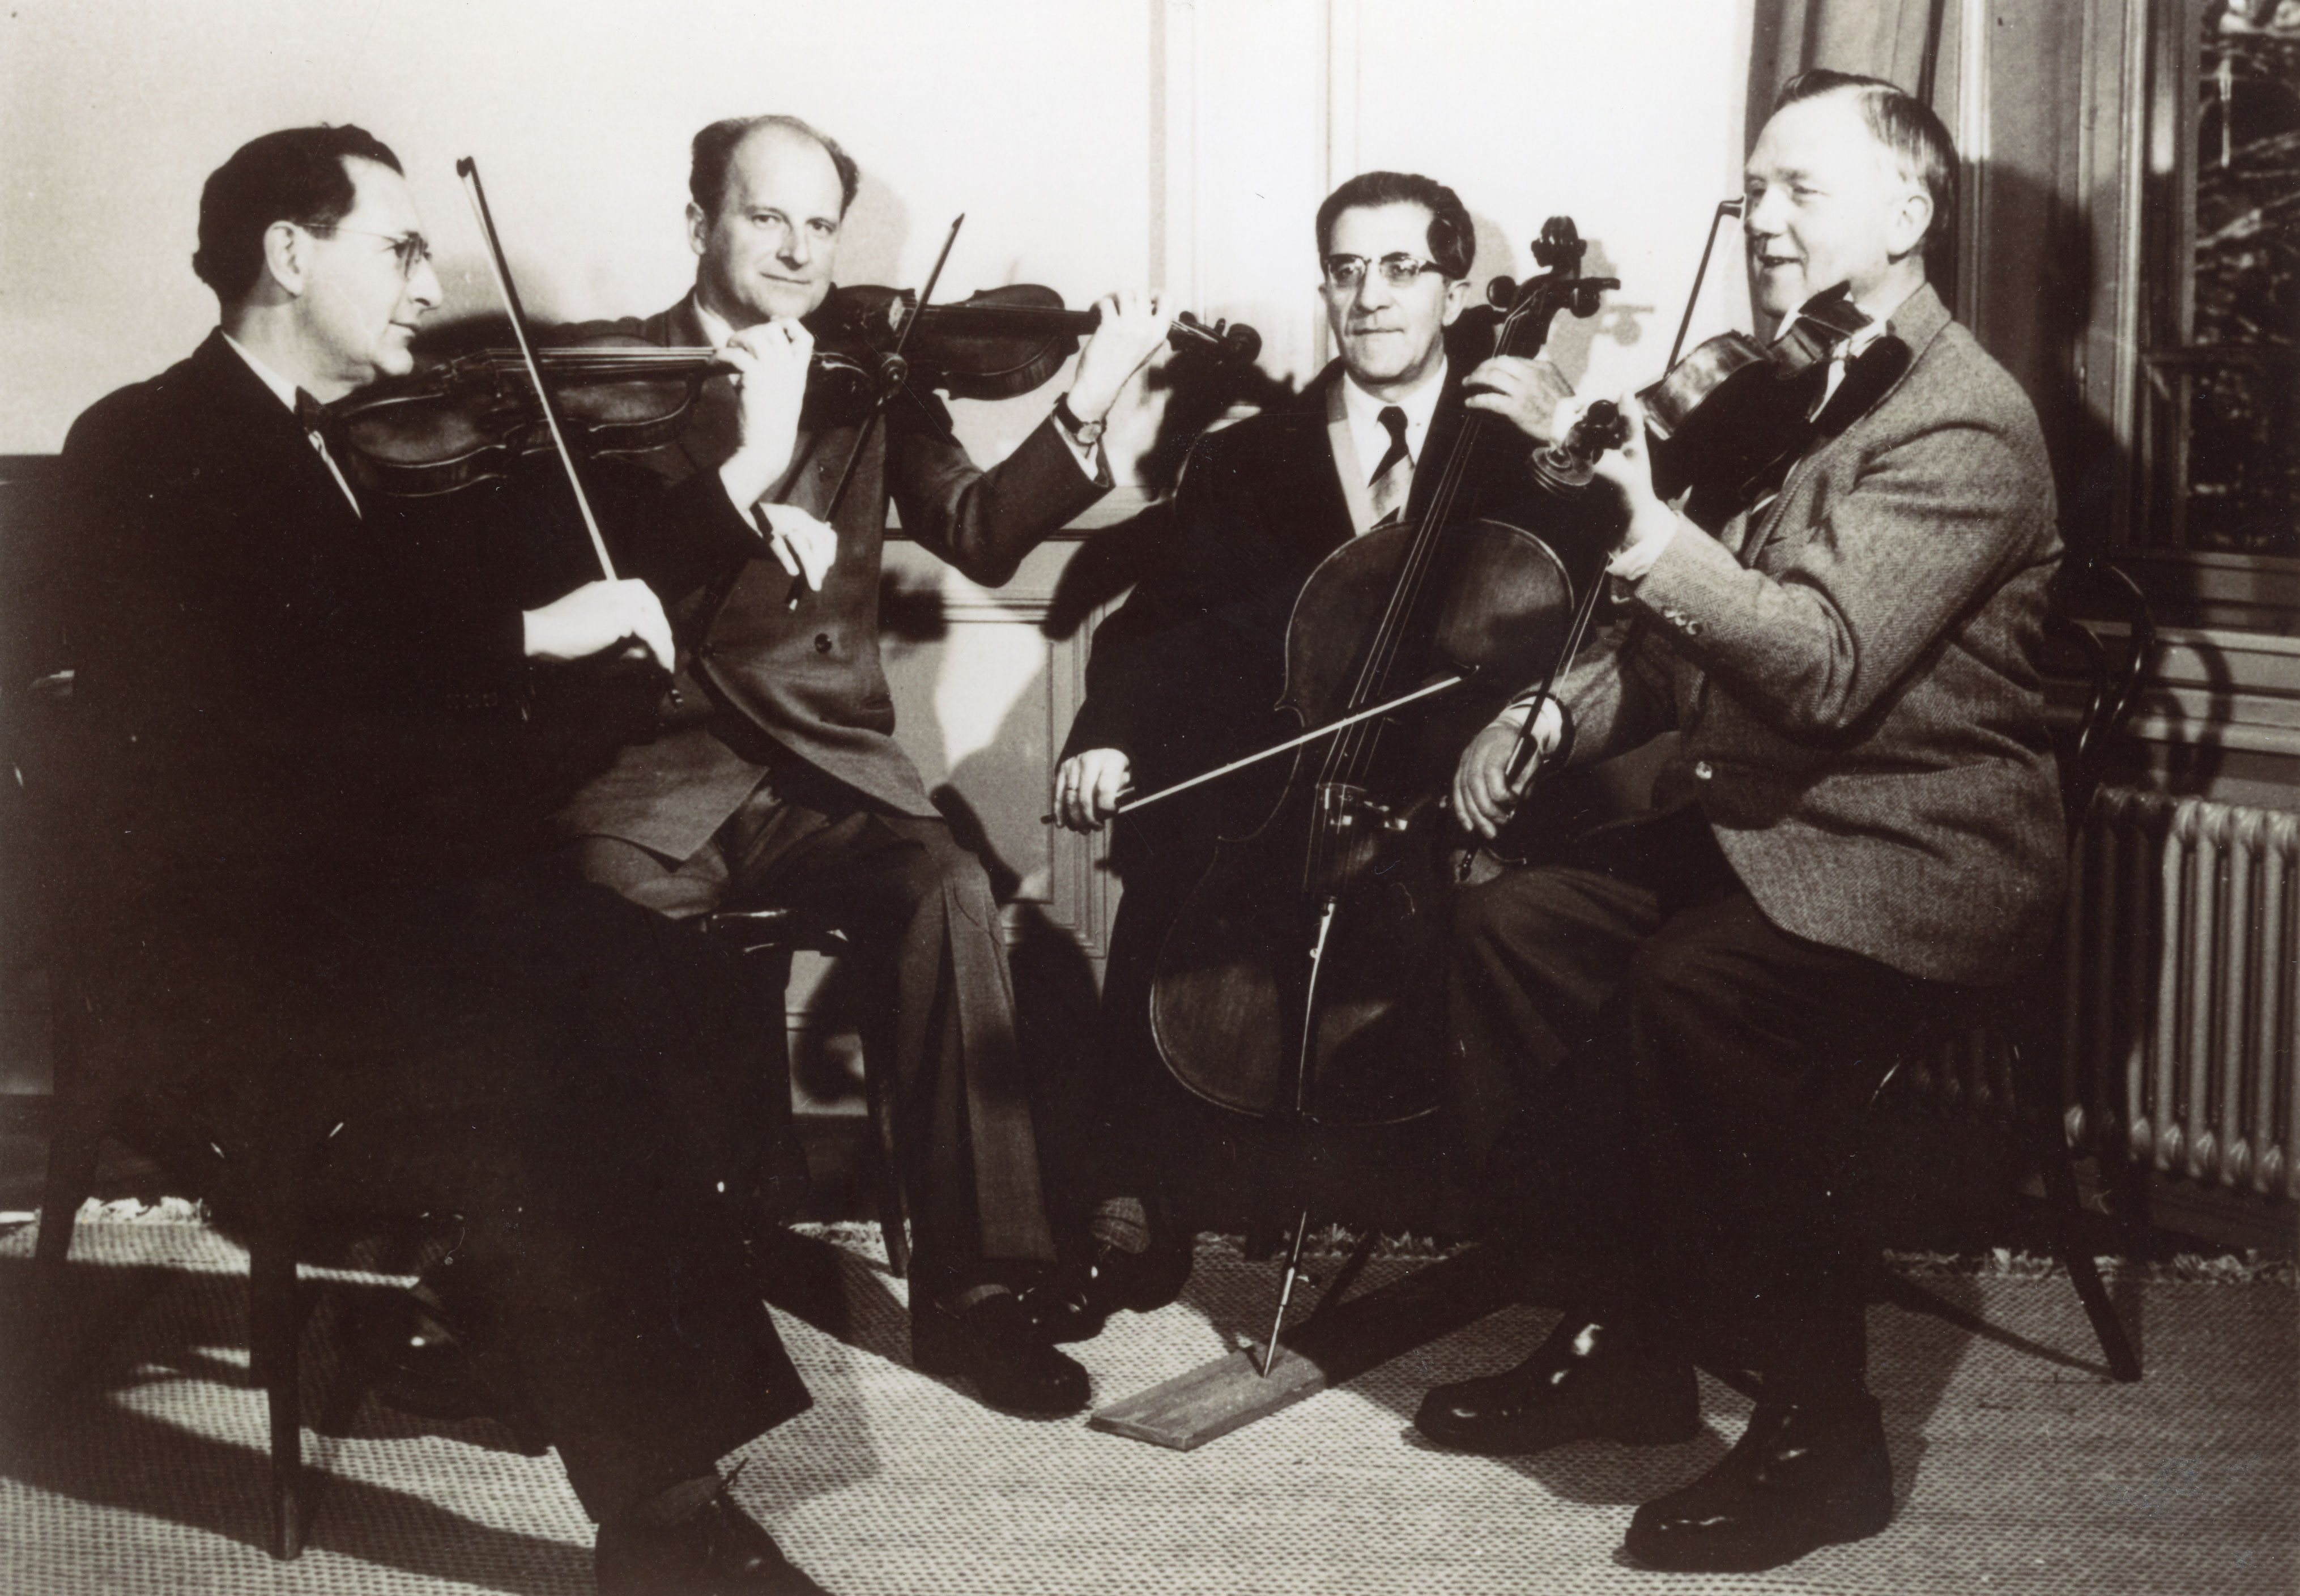 Le Quatuor à cordes de Winterthur dans sa formation de 1949 à 1966 avec - de gauche à droite - Peter Rybar, premier violon, Clemens Dahinden, second violon, Antonio Tusa, violoncelle et Heinz Wigand, alto - une photo citée de la page https://www.winterthur-glossar.ch/antonio-tusa